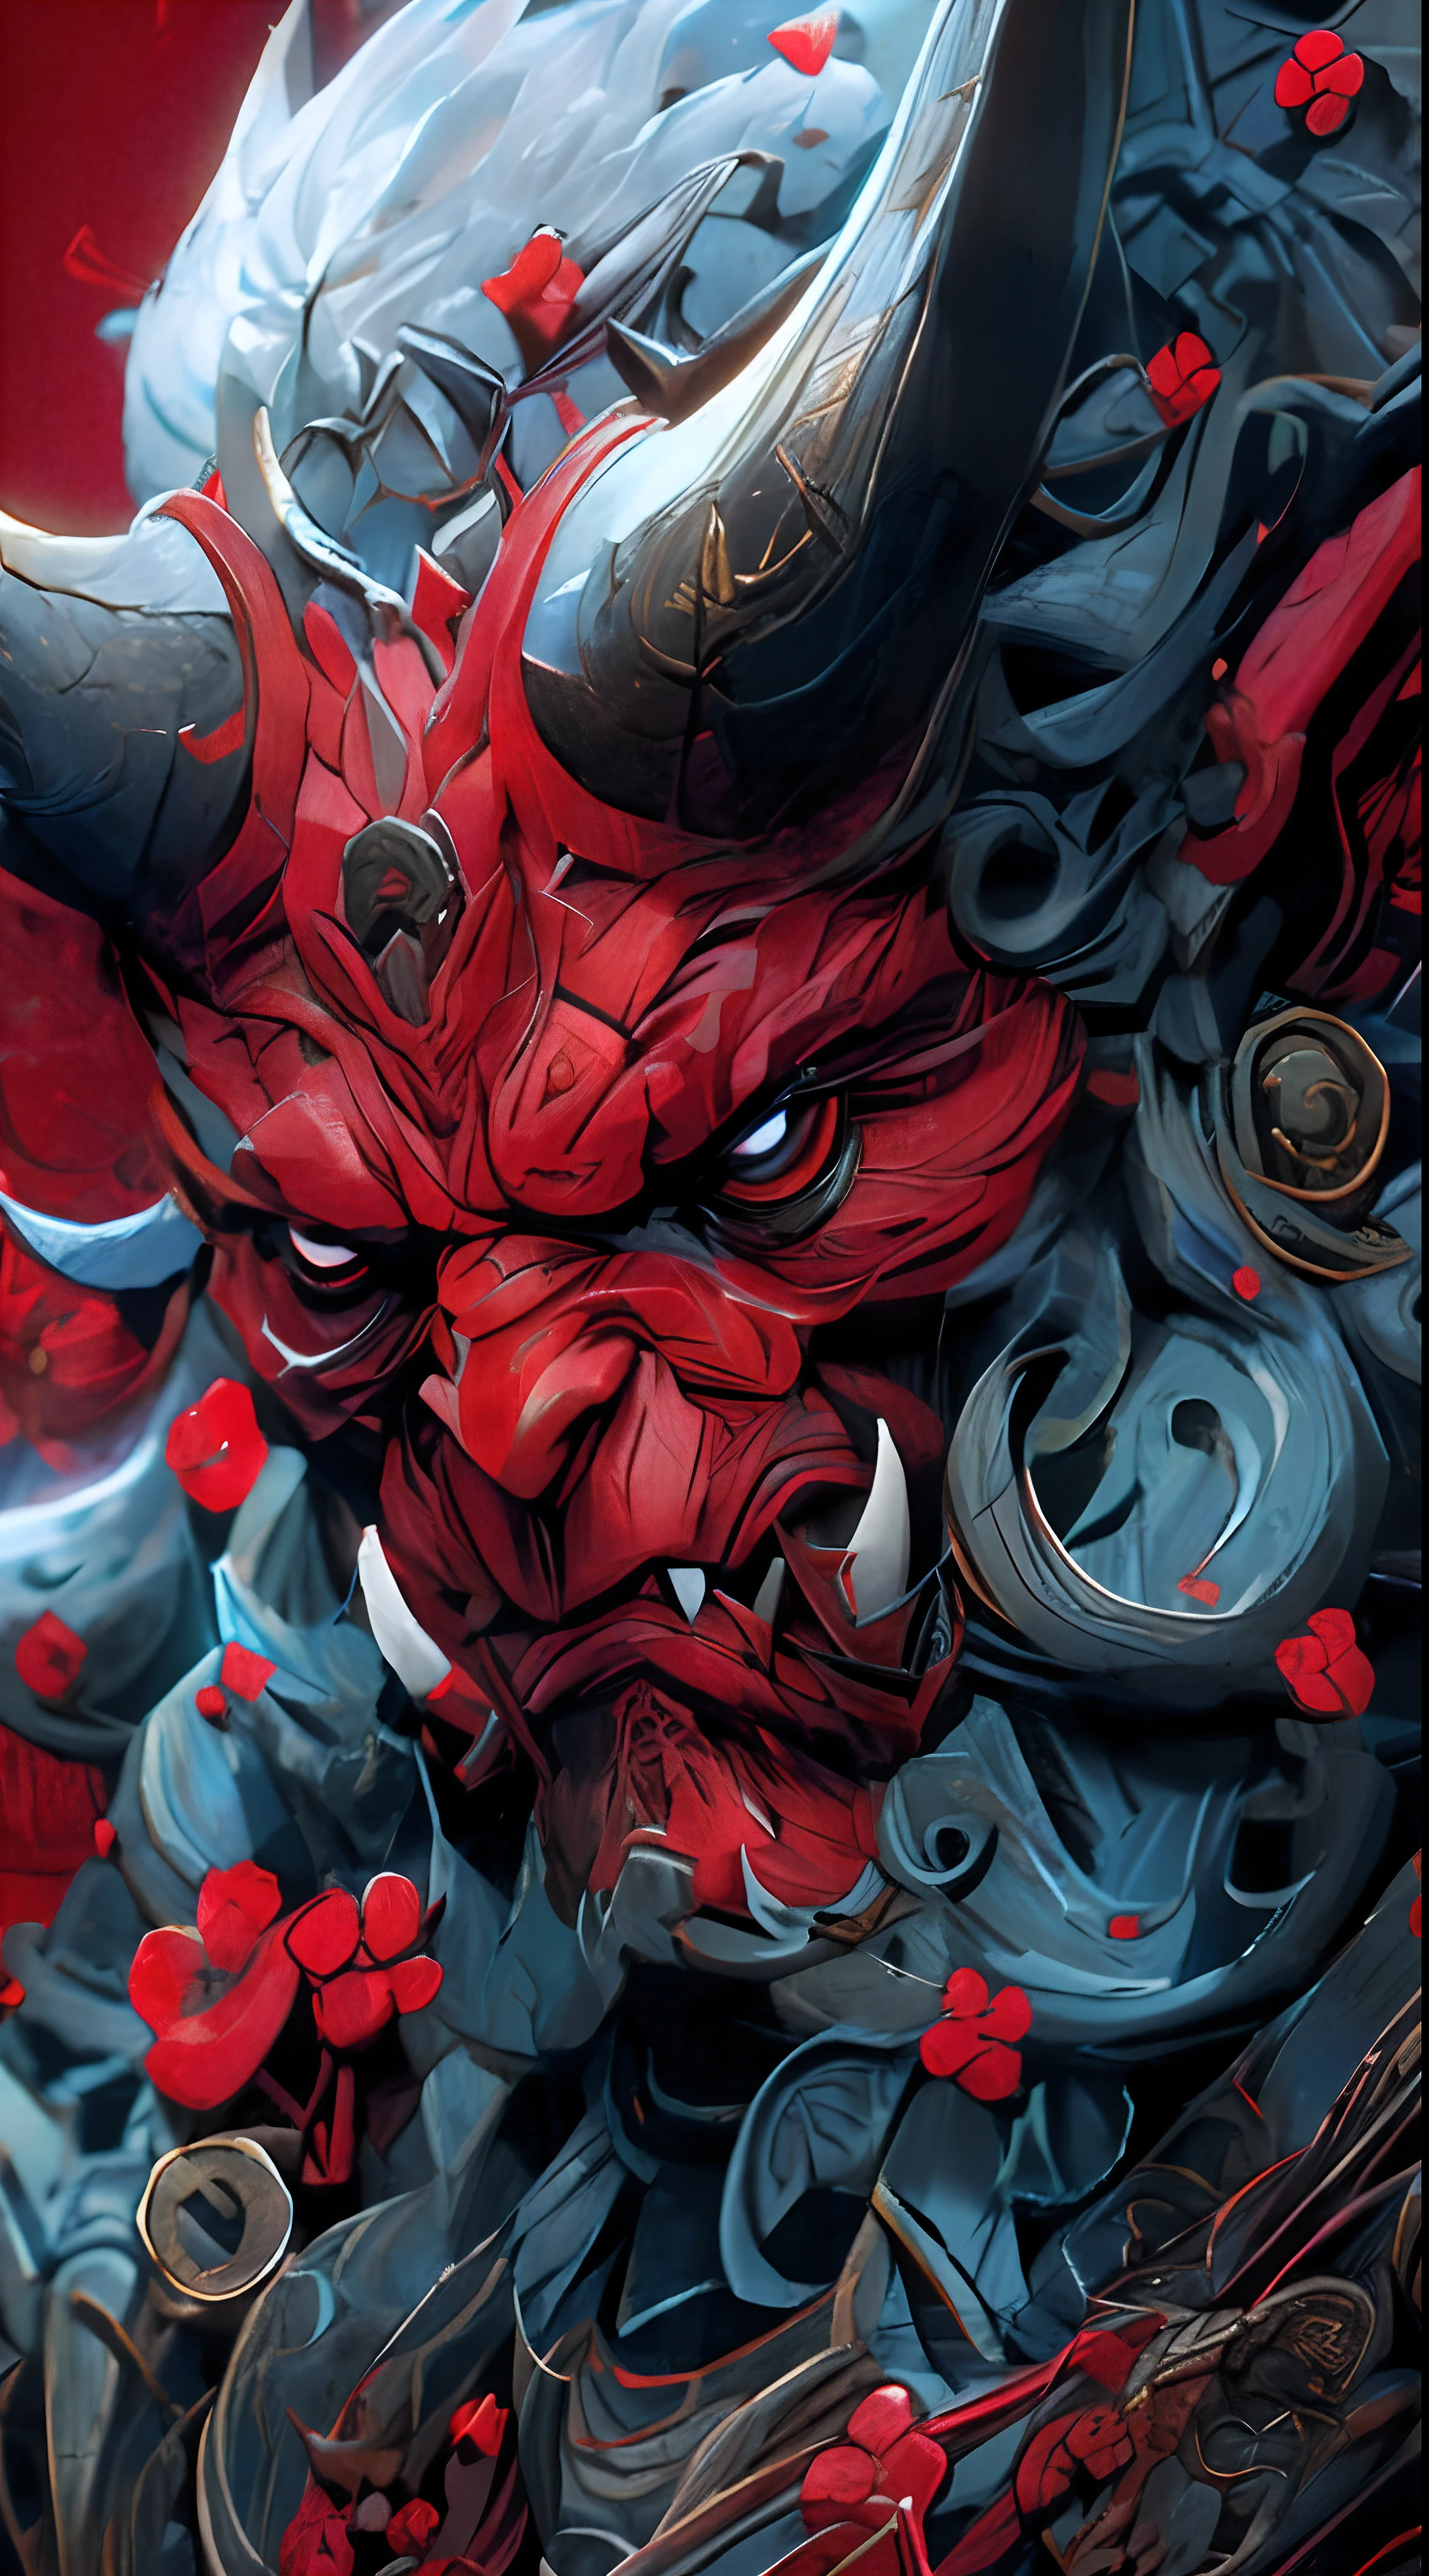 角のある悪魔の赤と黒の像がある, villain wearing a red 彼らはマスクします, 陰陽師の詳細なアート, 彼らは角を鳴らします, Demon Samurai, 彼らはマスクします, 悪魔の侍マスク, 悪魔 侍 戦士, 4Kの精緻な絵画, 複雑で華やかなアニメ CGI スタイル, 非常に詳細な 4K アートワーク, Retrato de Onmyoji, inspired by Shunkōsai Hokushū